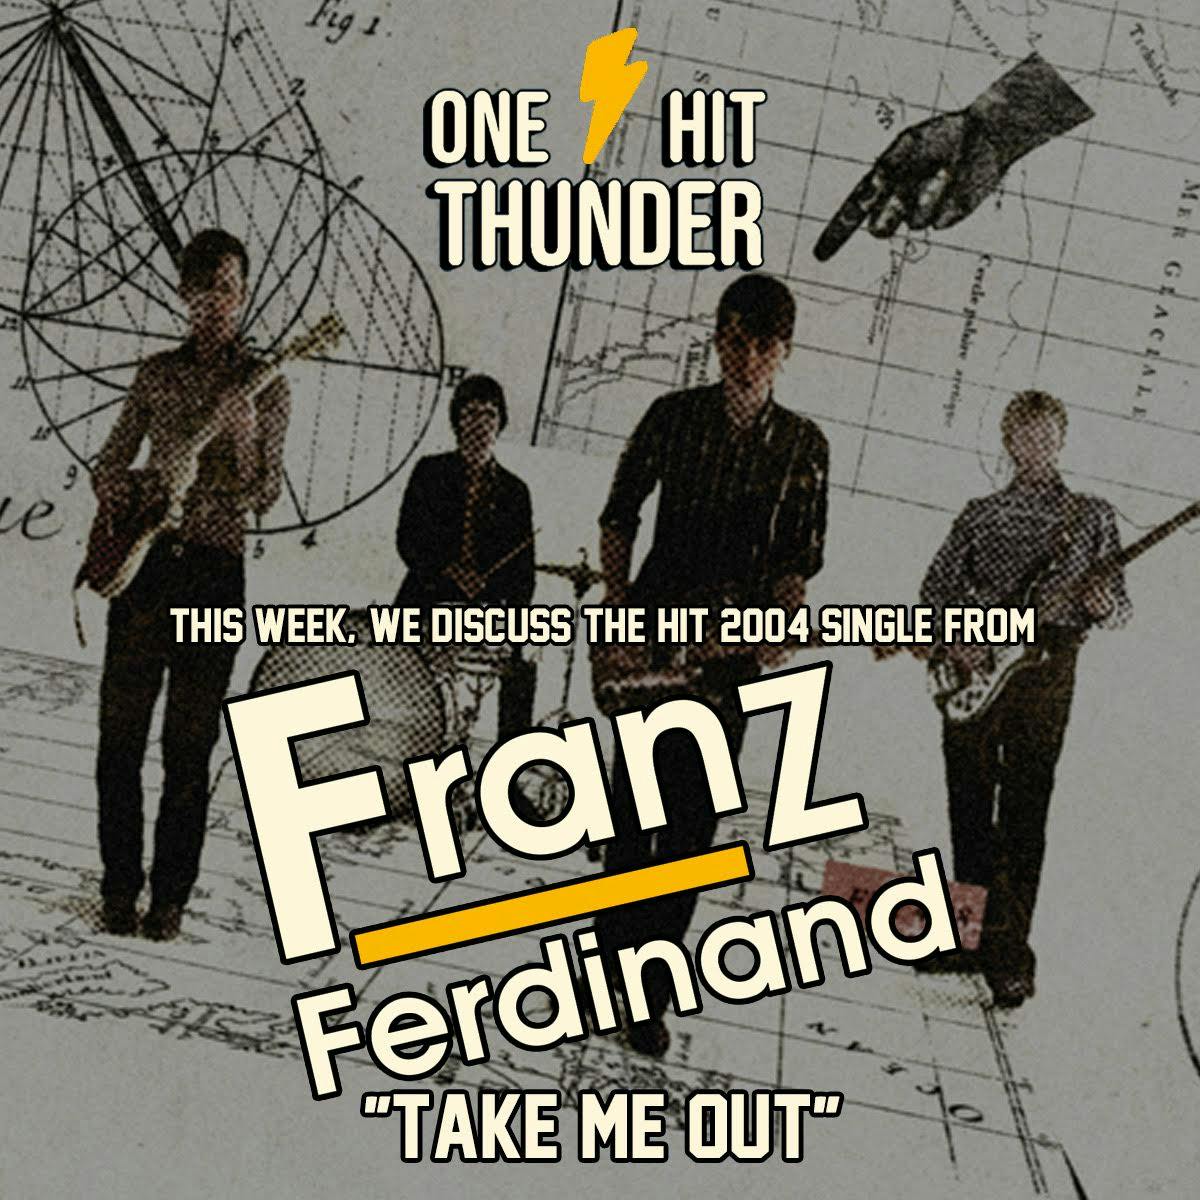 ”Take Me Out” by Franz Ferdinand